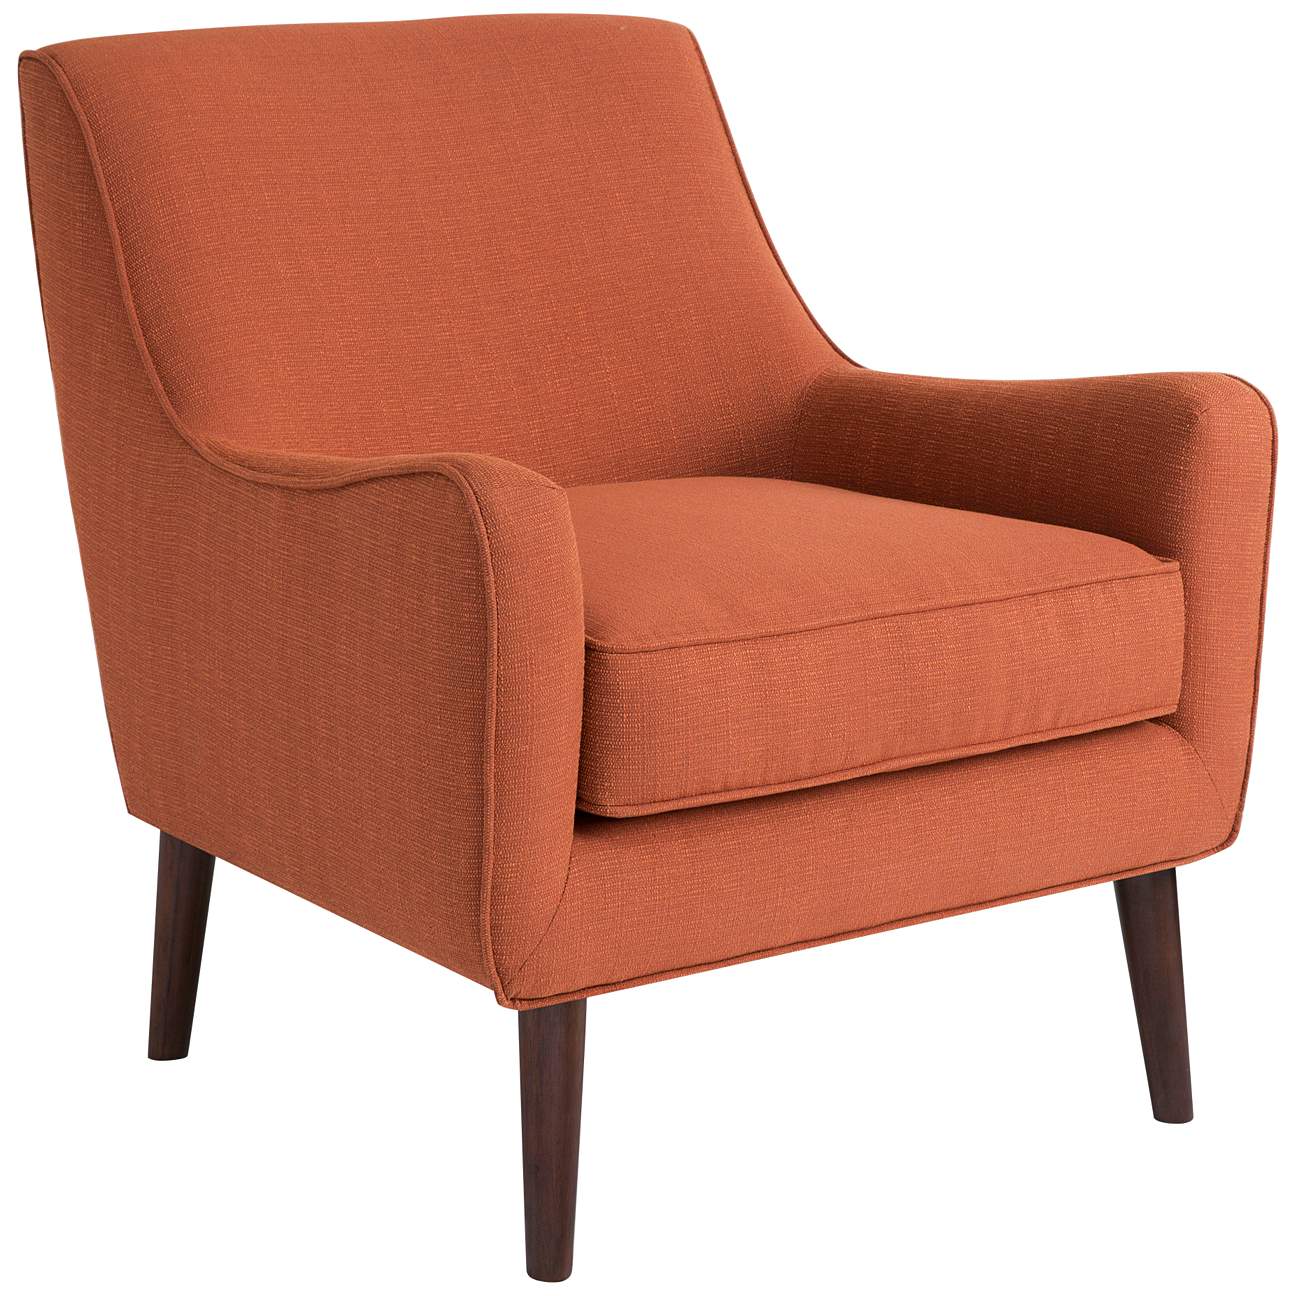 Oxford Burnt Orange Accent Chair - #746P0 | Lamps Plus